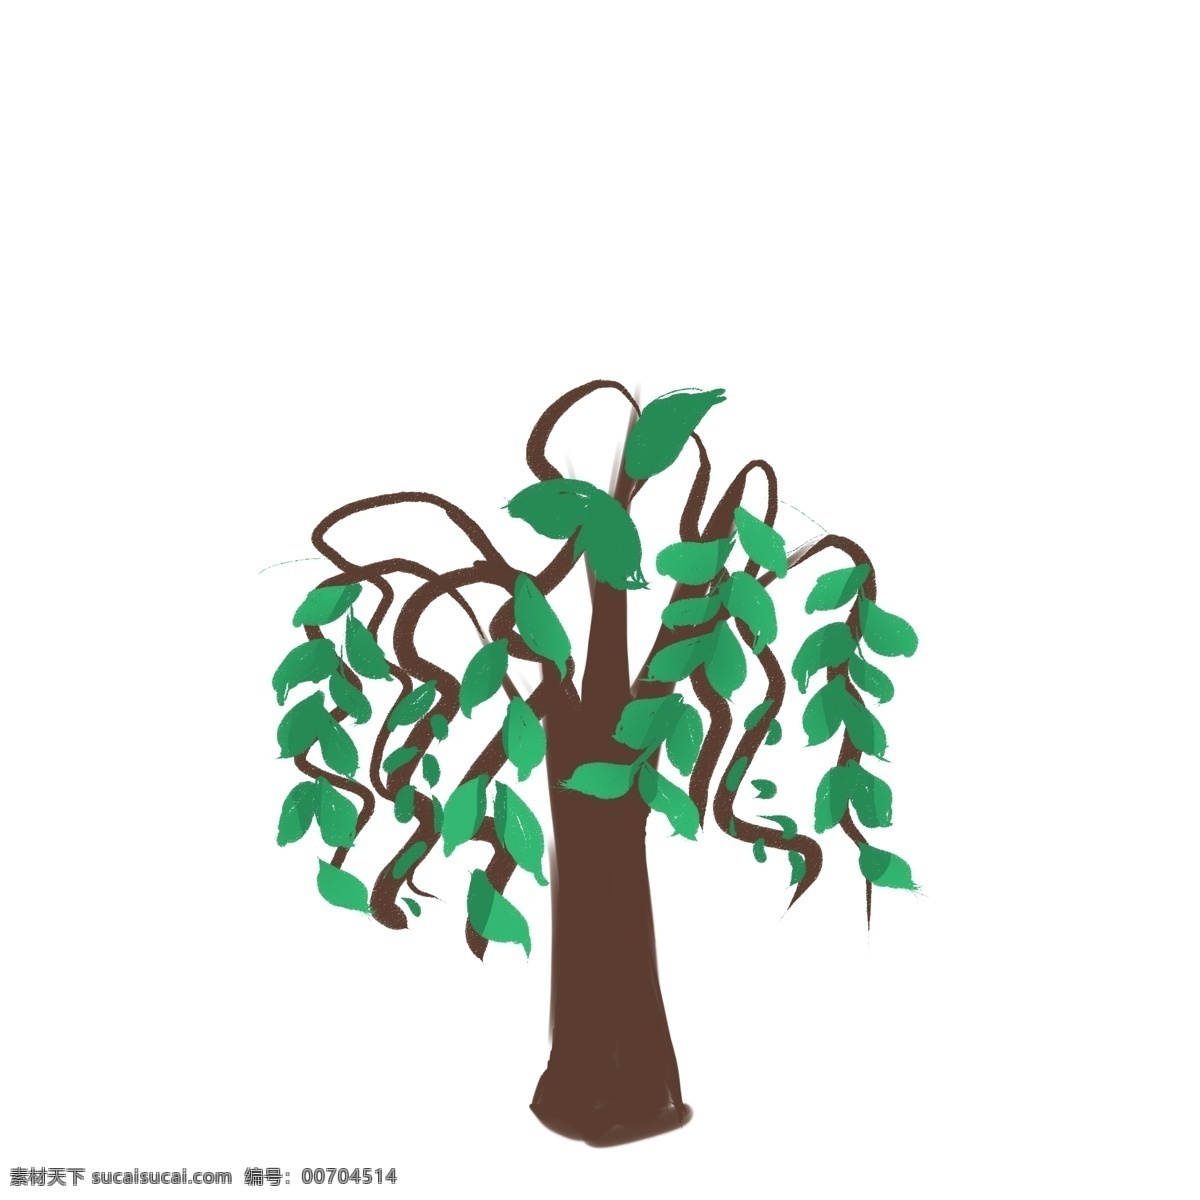 卡通 绿色 树木 创意 插画 卡通植物插画 绿色树叶 黑色的树干 创意植物 抽象植物插画 植物插画 植物